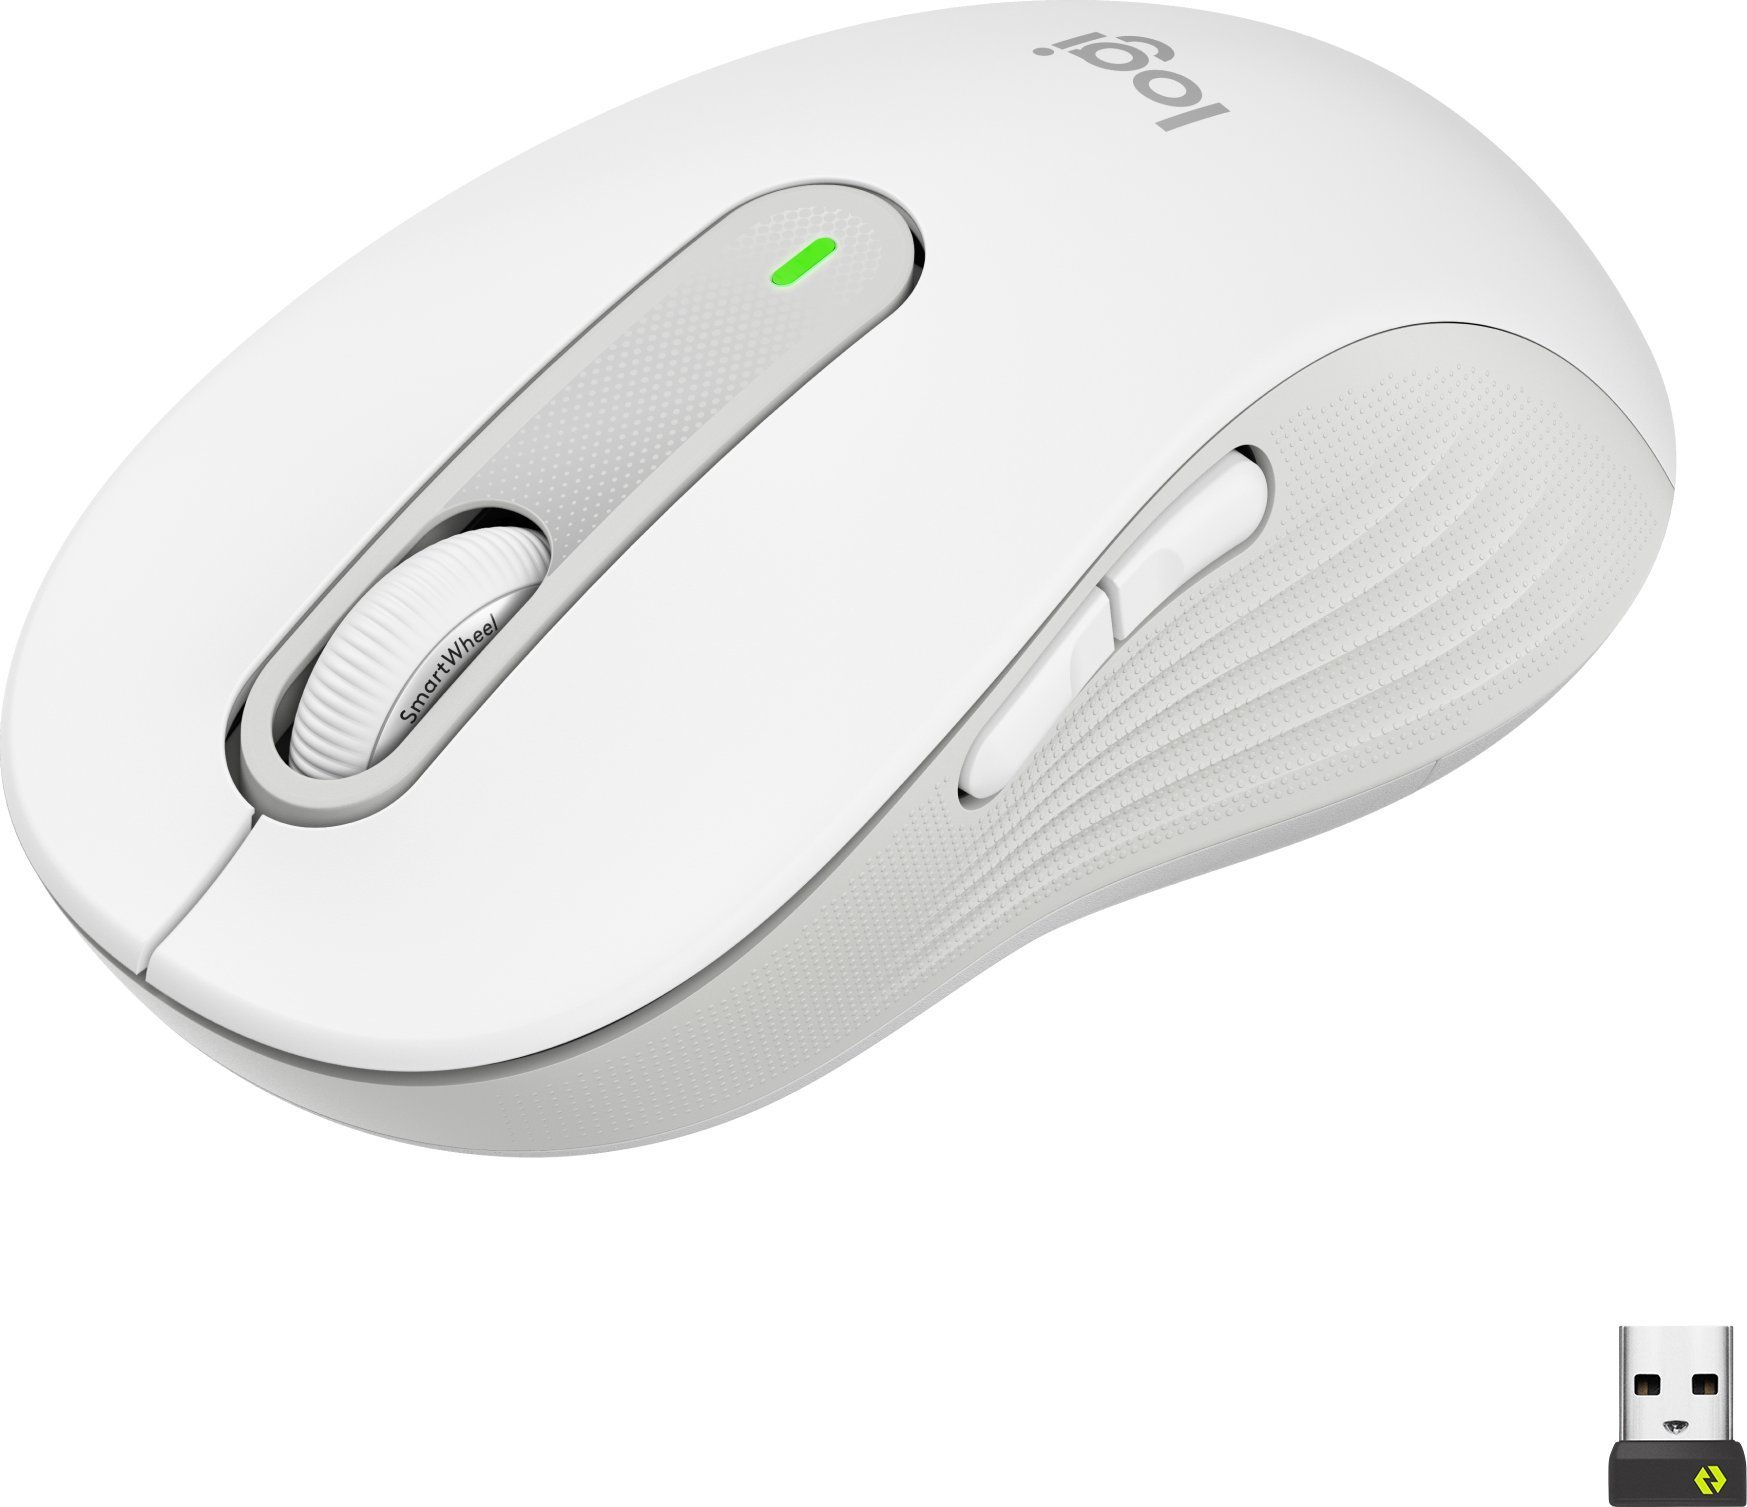 Mouse Logitech M650 L alb-gri (910-006238)